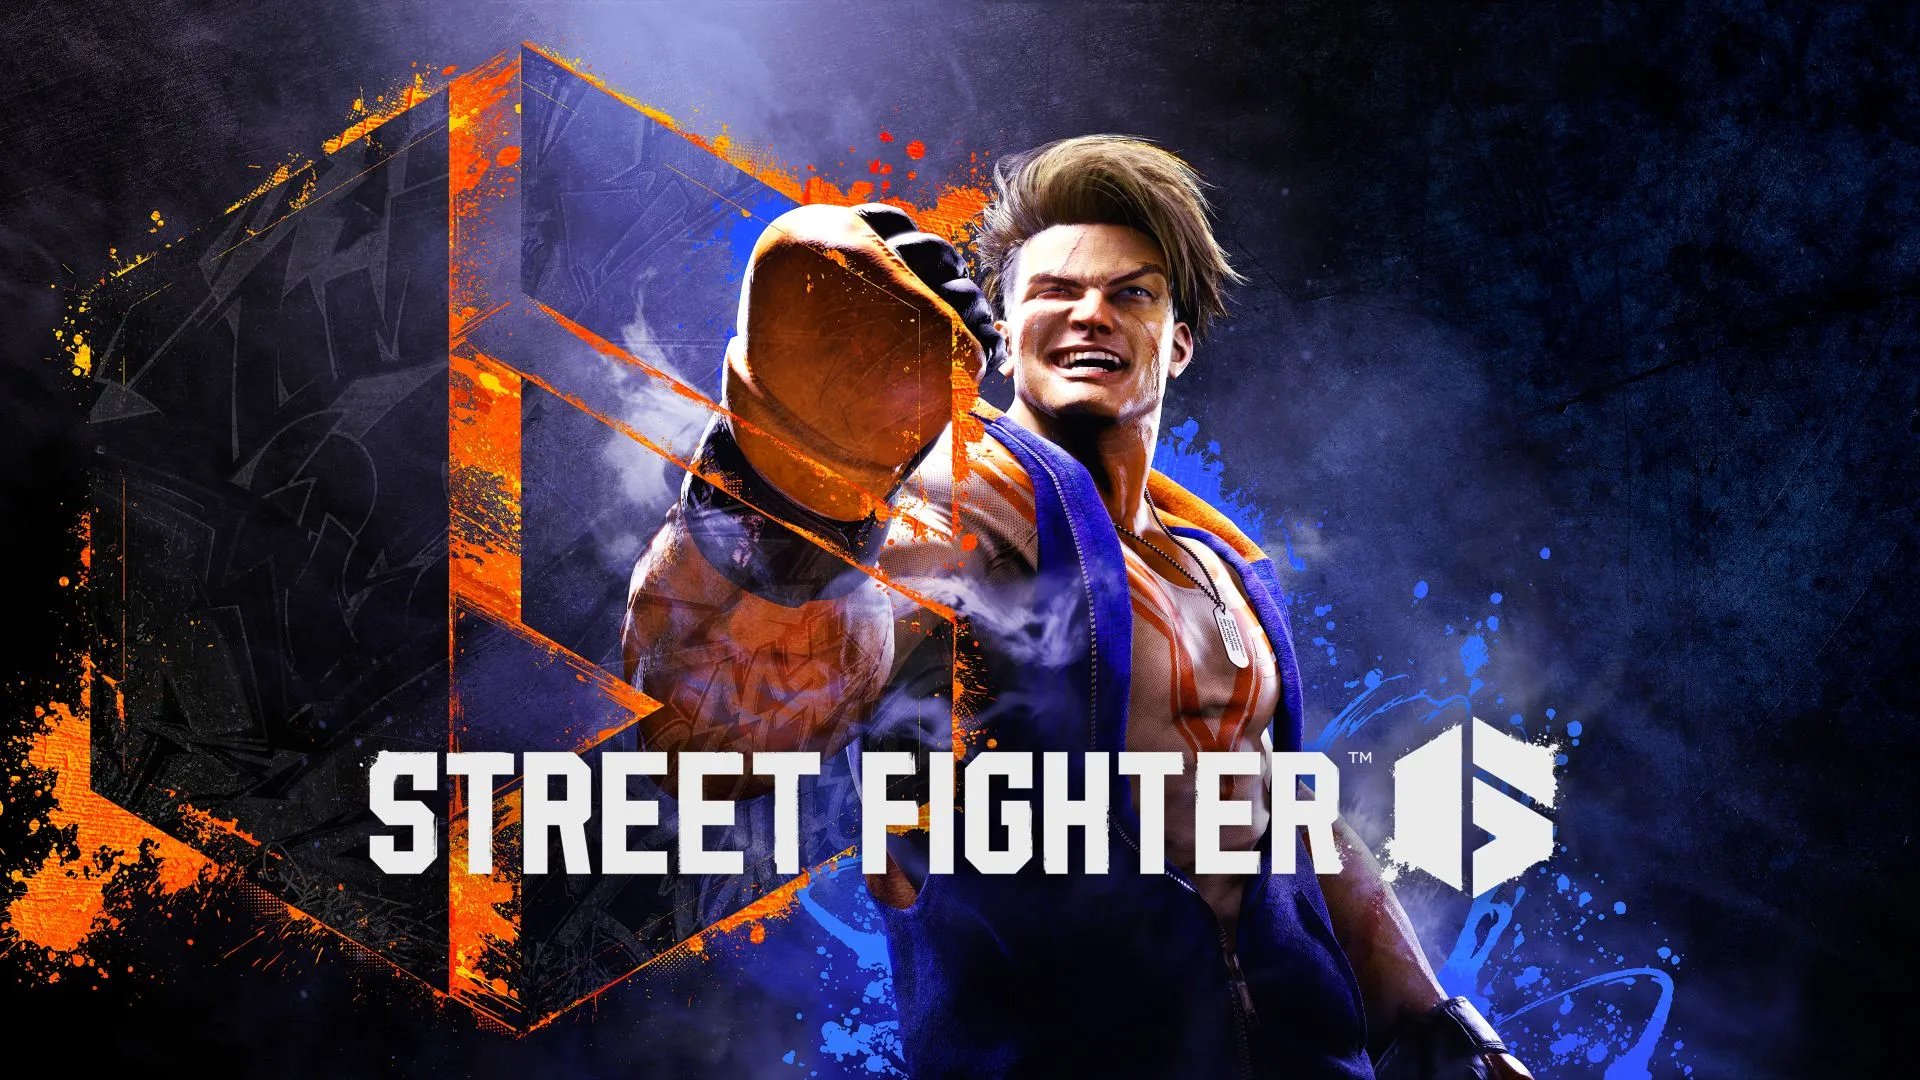 Street Fighter: Legendary ha adquirido los derechos de la franquicia 3